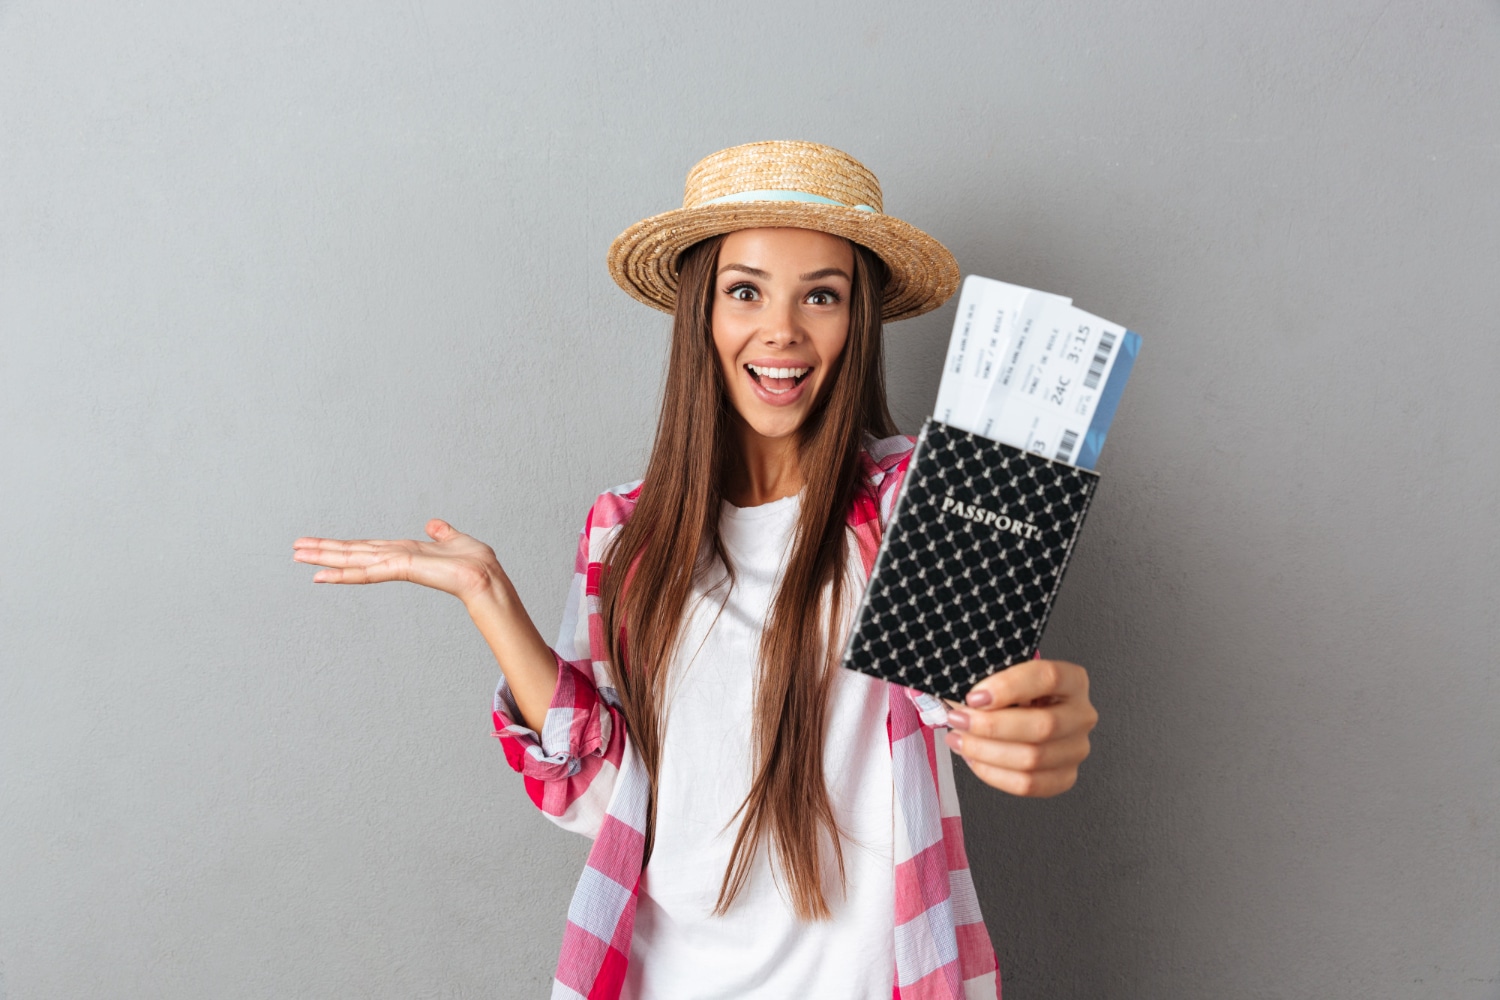 primo piano ritratto sorridente donna felice viaggiatore cappello di paglia che mostra passaporto con biglietti aerei